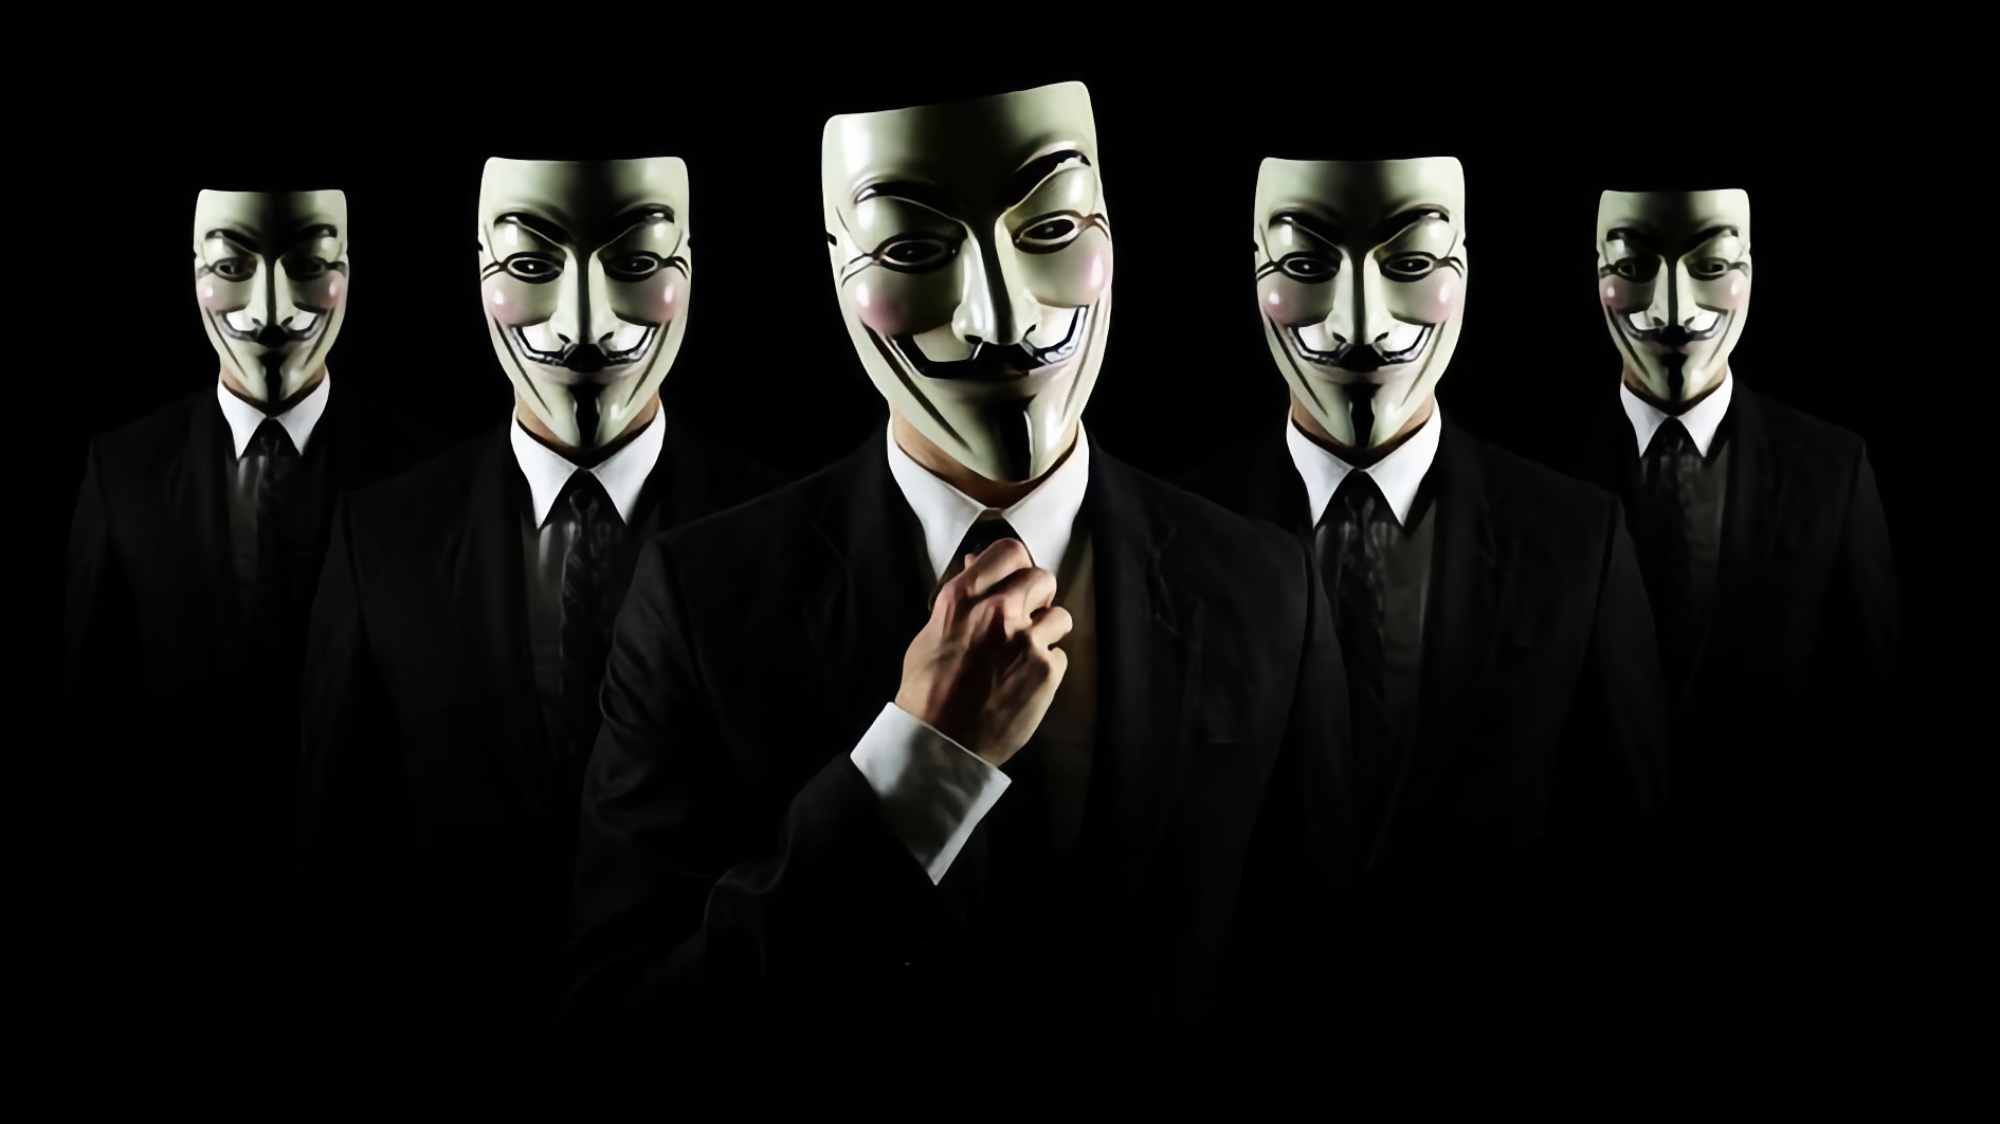 Anonimowy wyciek danych od prorosyjskich hakerów Killnet